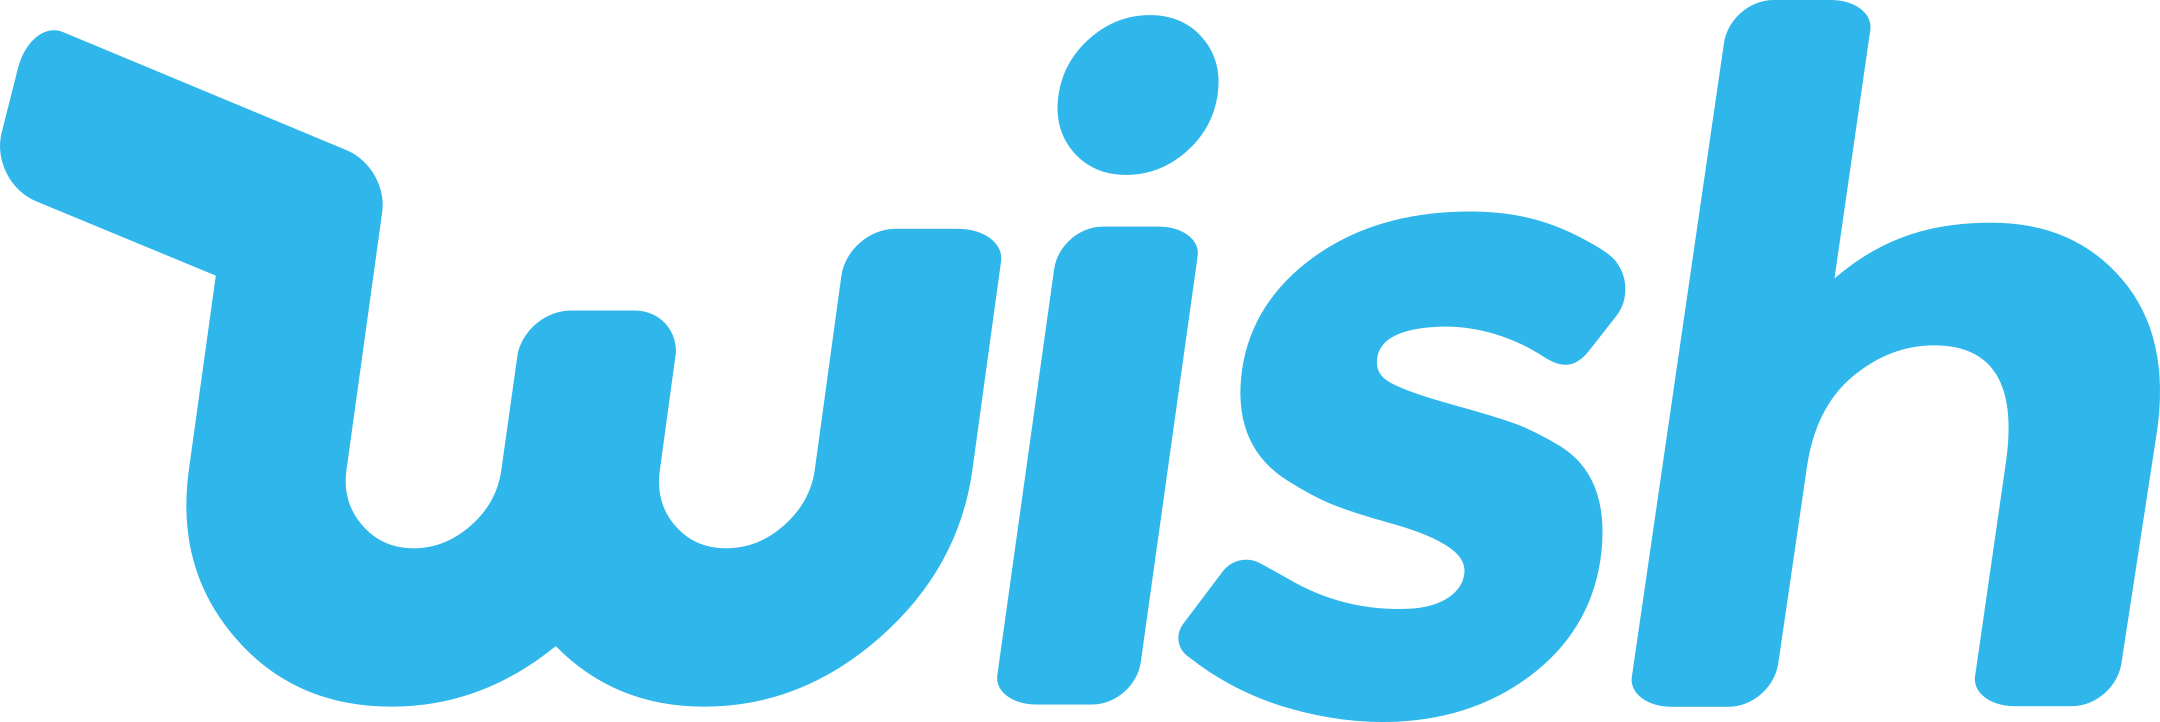 wish logo 1 - Wish Logo